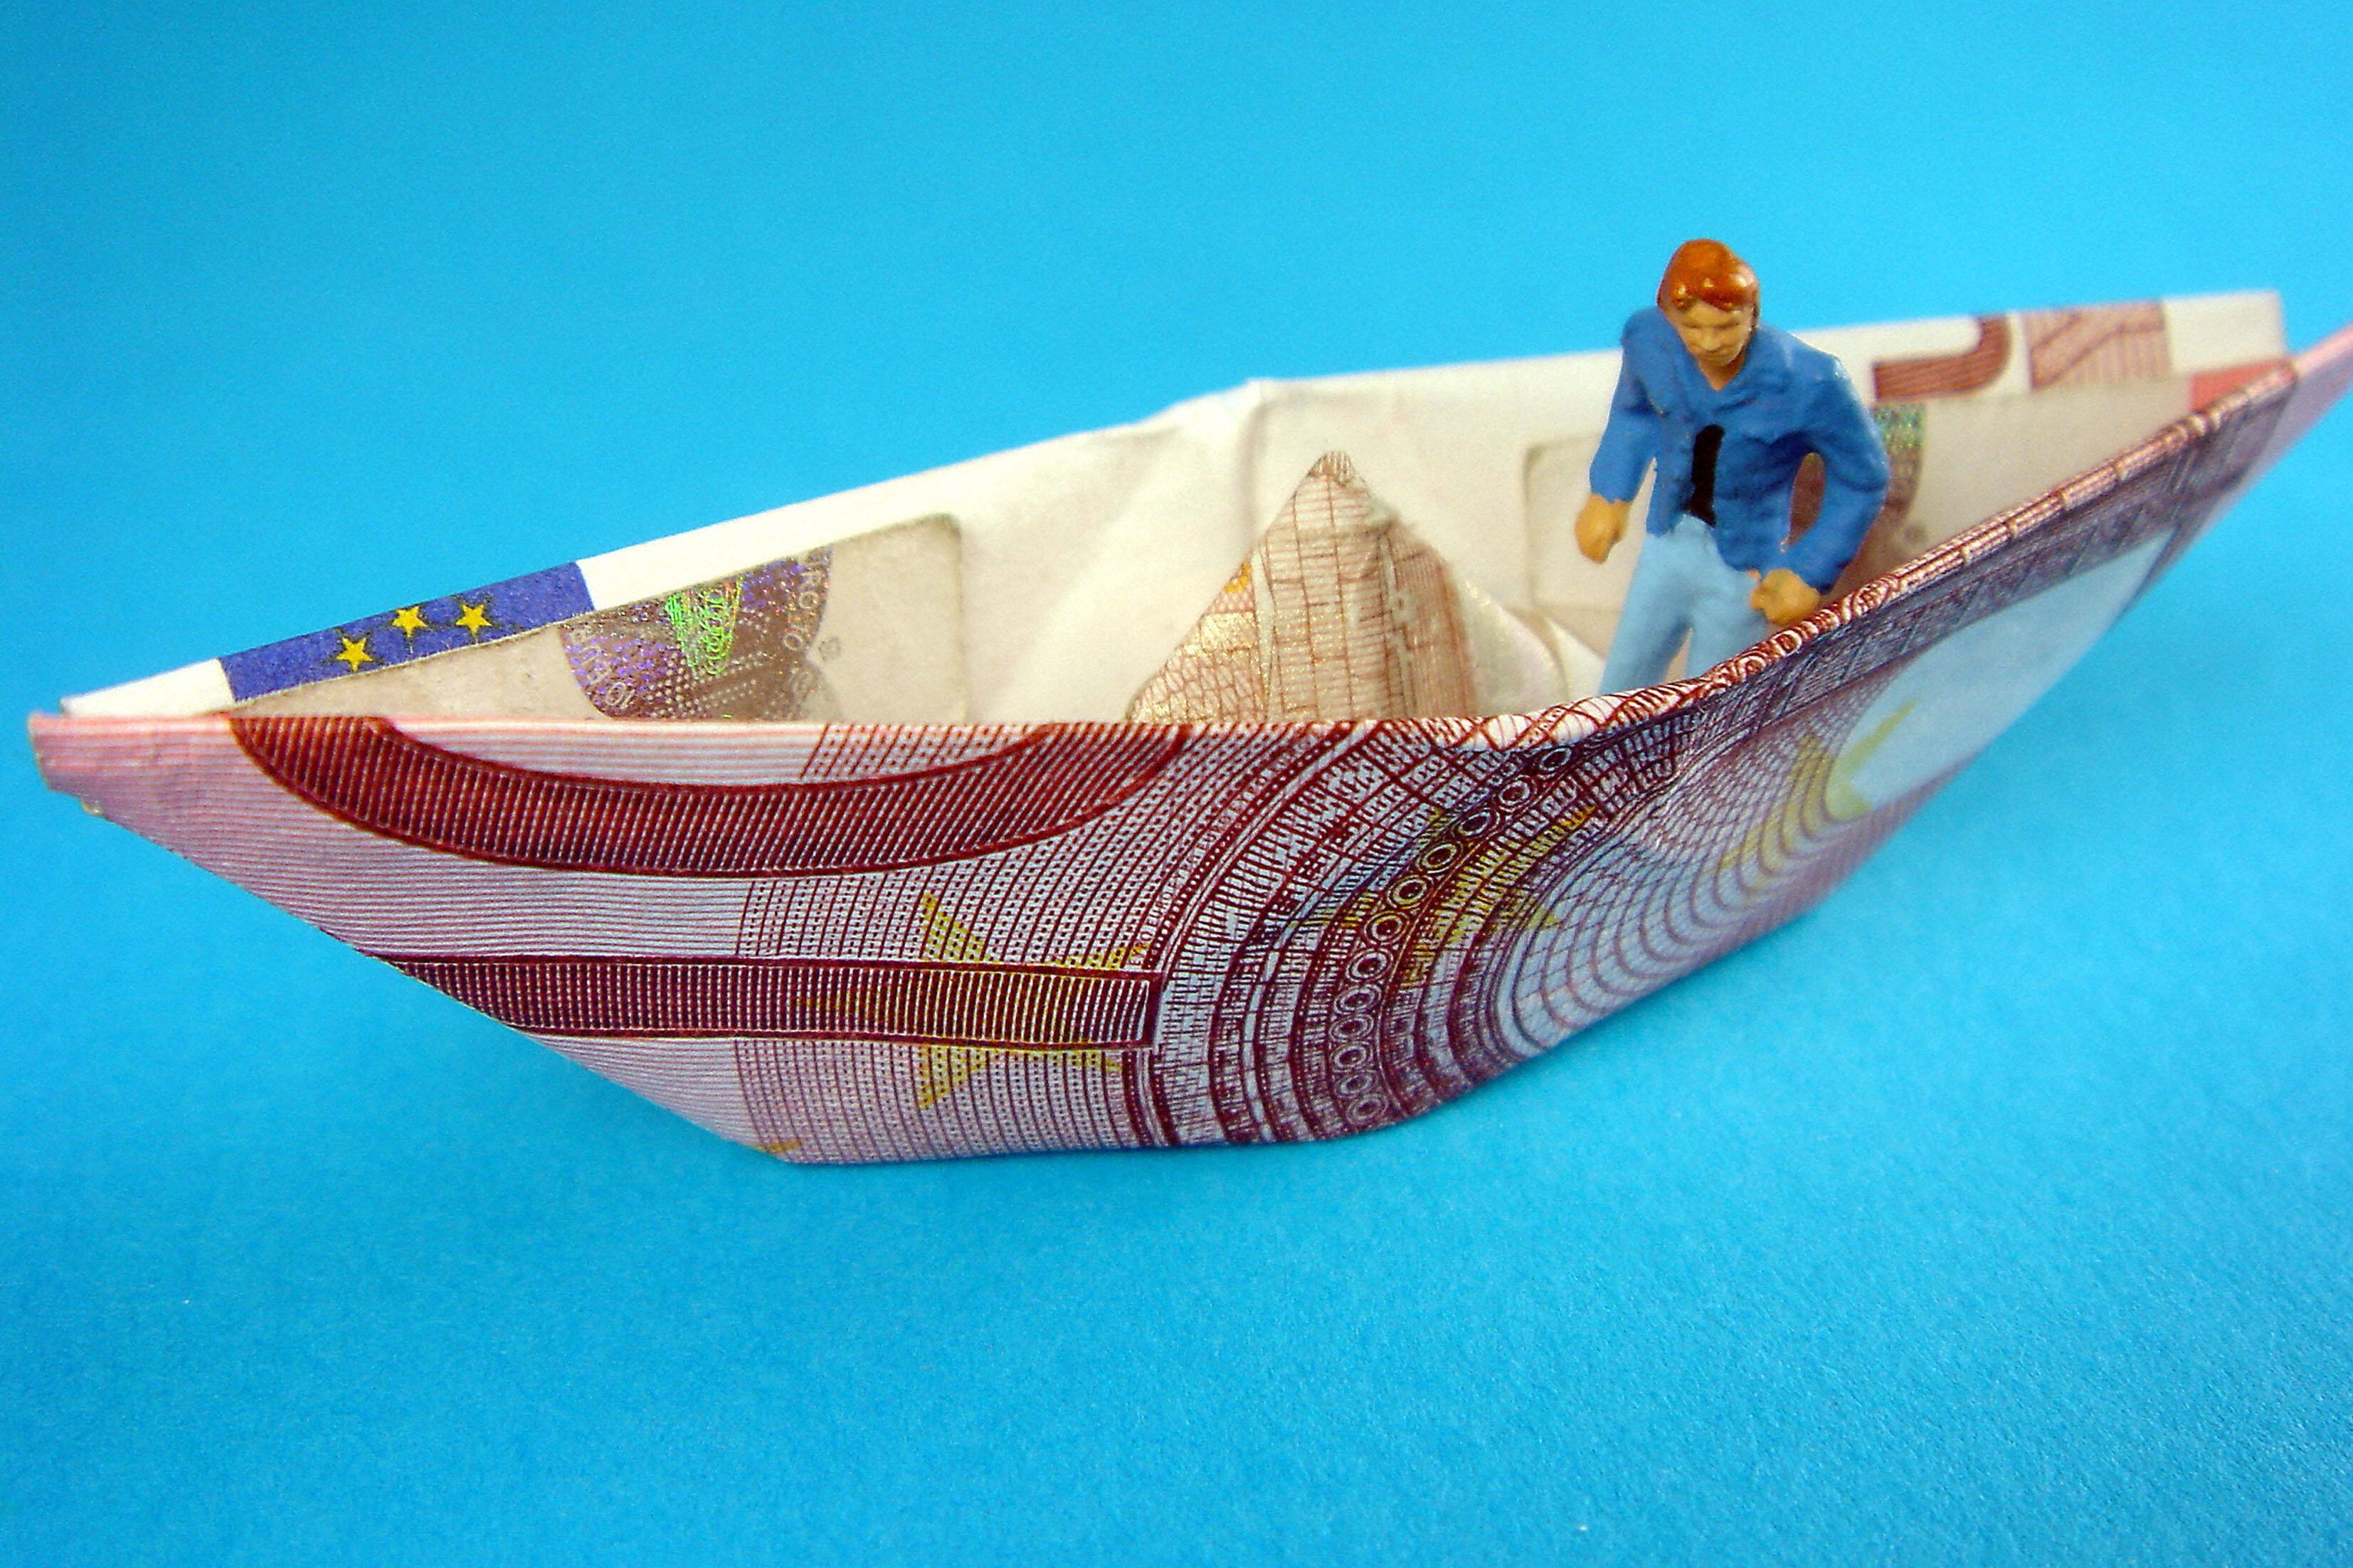 Das Symbolbild zeigt ein Papierschiffchen, das aus einem Geldschein gefaltet ist. Darin sitzt ein kleines Figürchen.